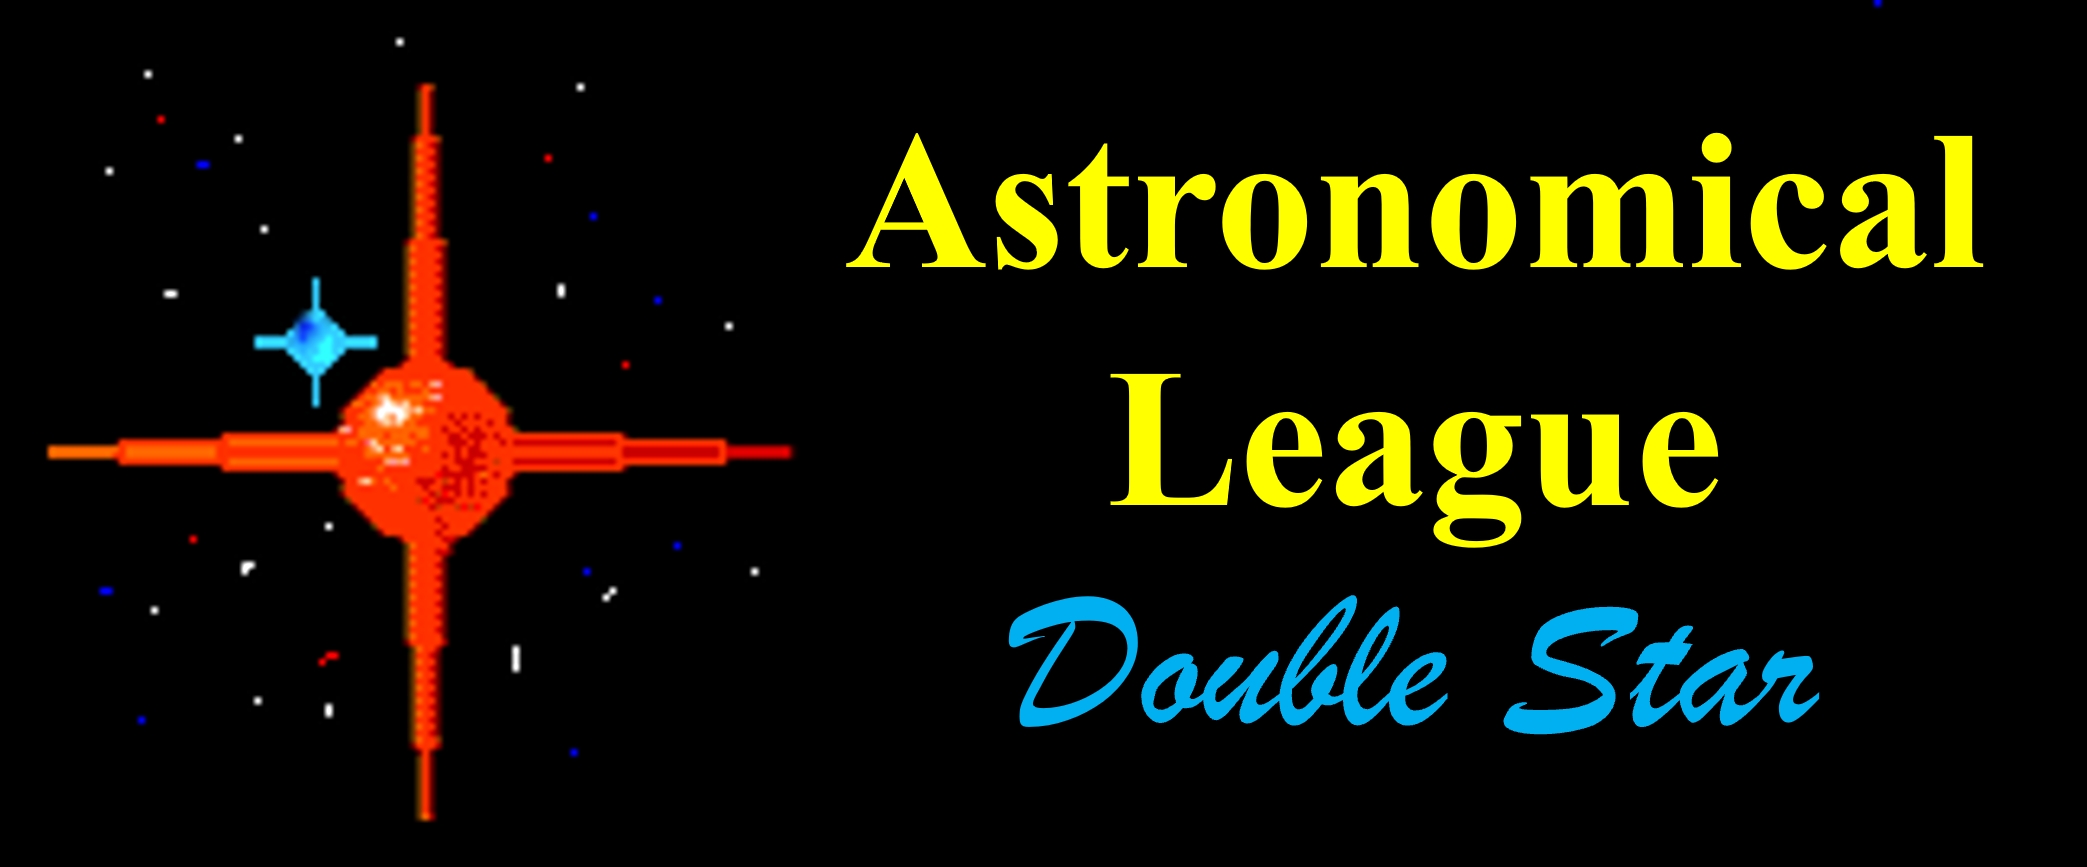 Double Star Observing Program Logo